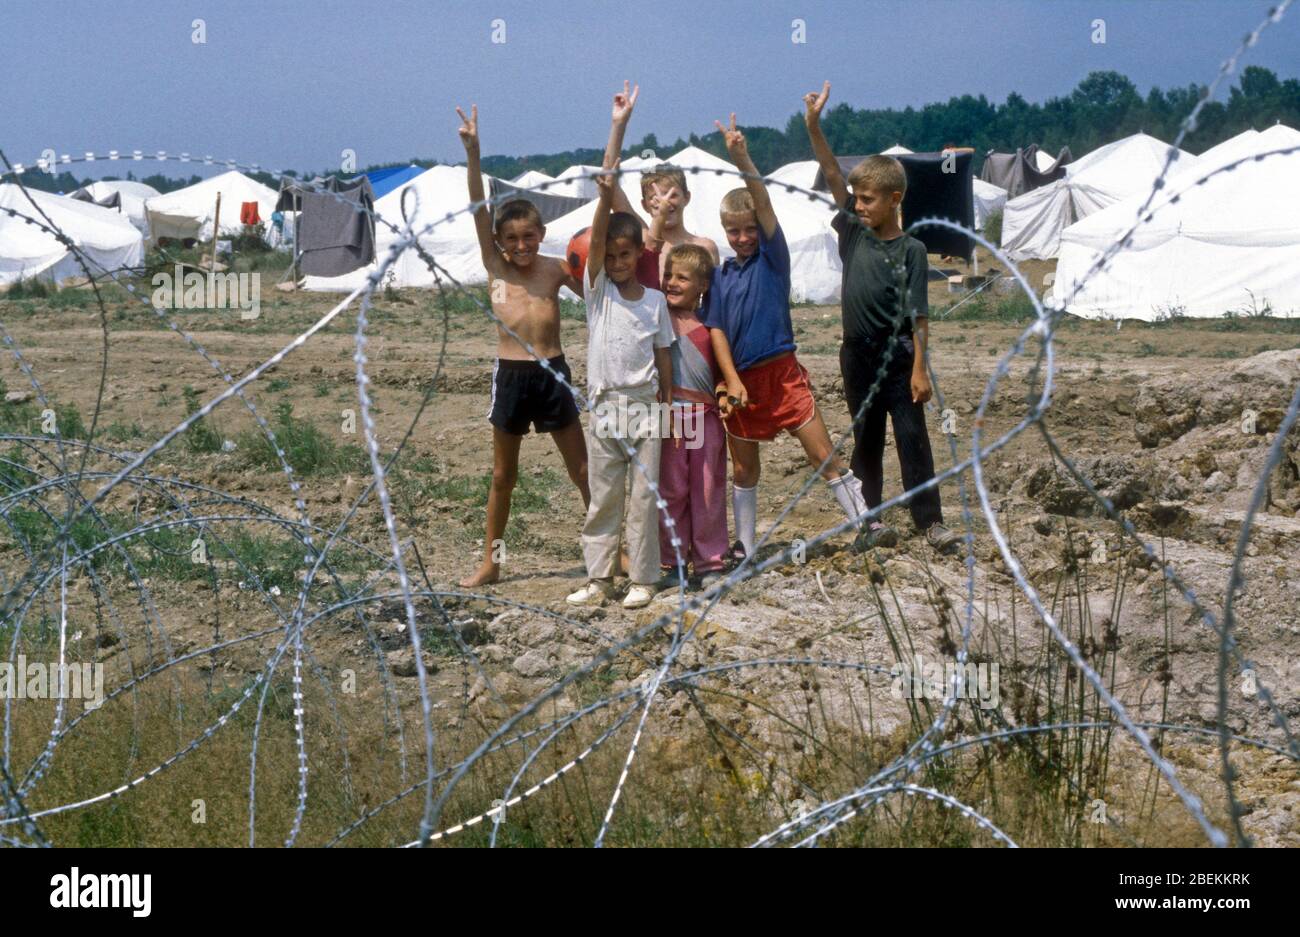 1995 Tuzla, Bosnien - Obdachlose Kinderflüchtlinge grüßen auf dem Flugplatz Tuzla temporäres UN-Flüchtlingslager für bosnische Muslime, die vor dem Massaker von Srebrenica während des Bosnienkrieges fliehen Stockfoto